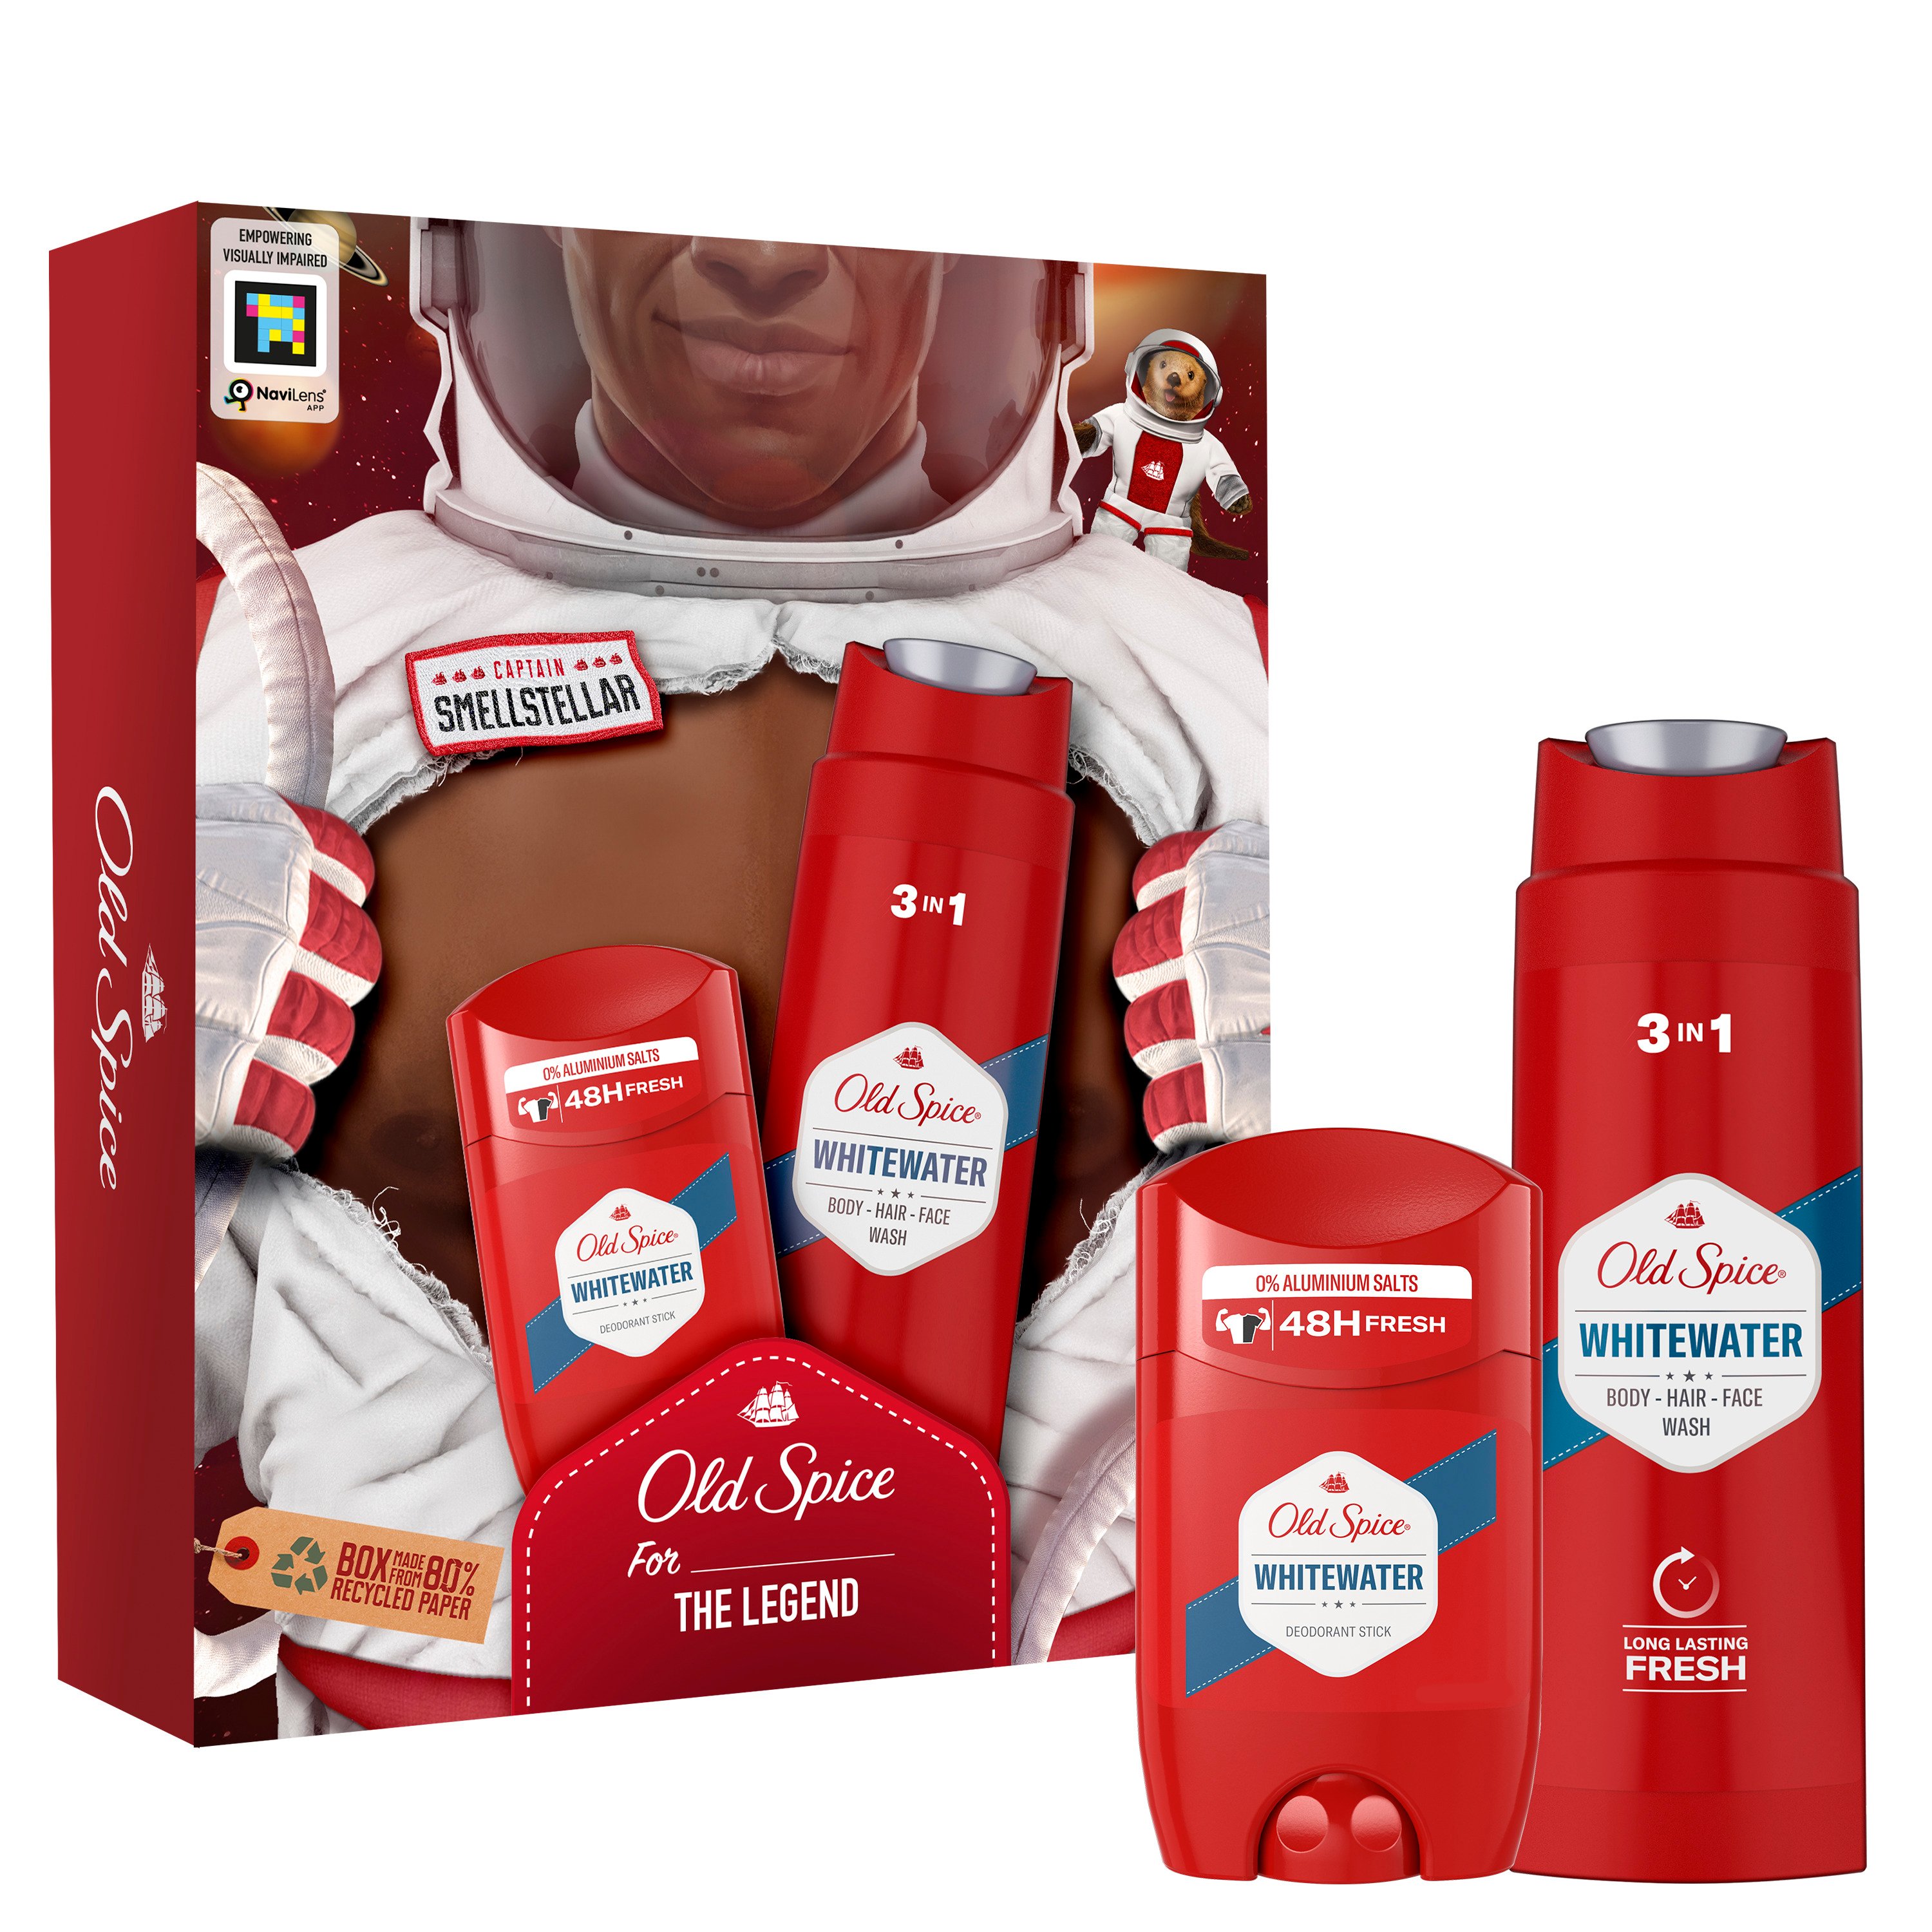 Подарочный набор для мужчин Old Spice Astronaut WhiteWater: твердый дезодорант 50 мл + гель для душа 3 в 1 250 мл - фото 1